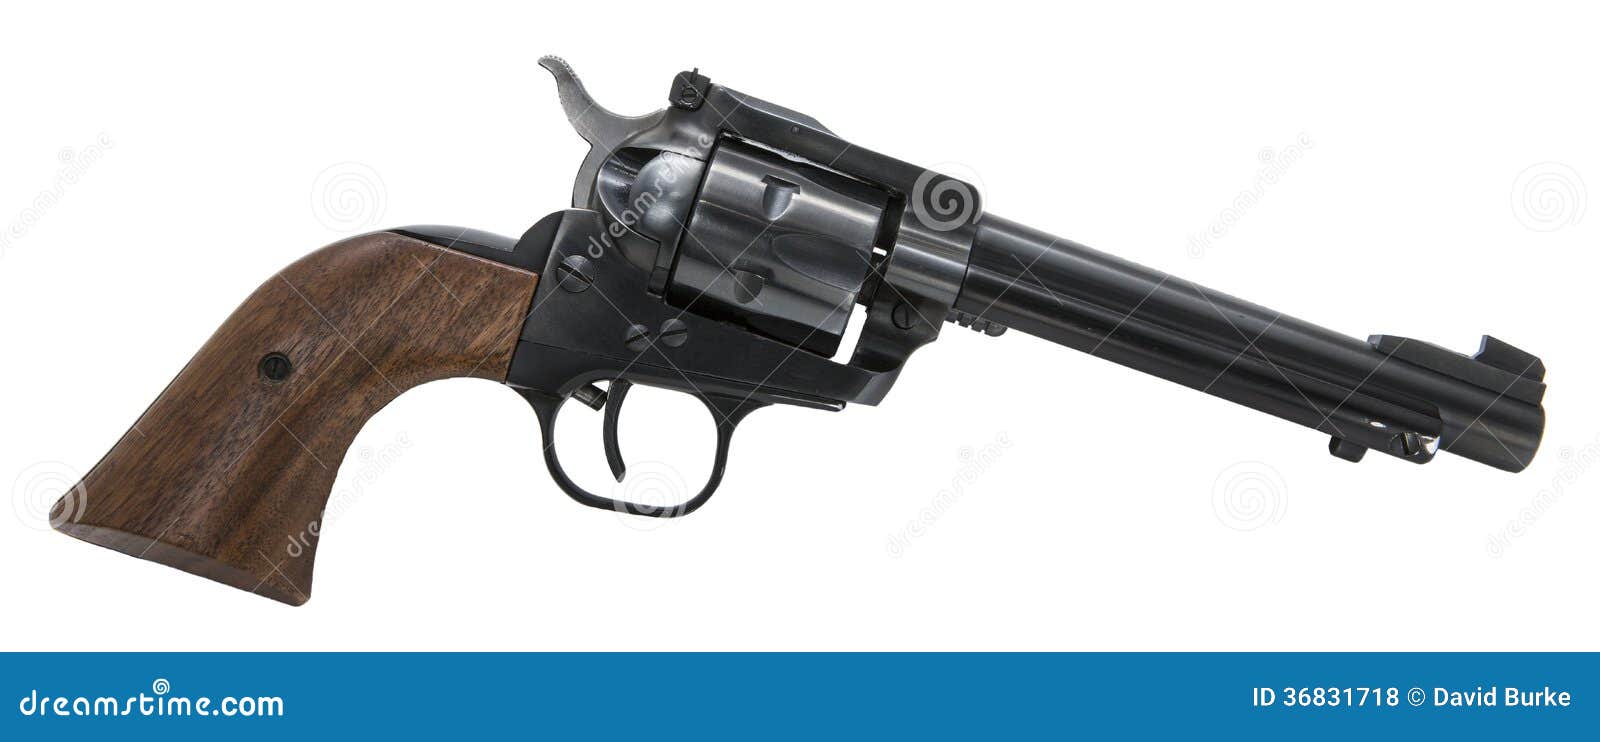 revolver firearm western six shooter pistol handgun gun defense